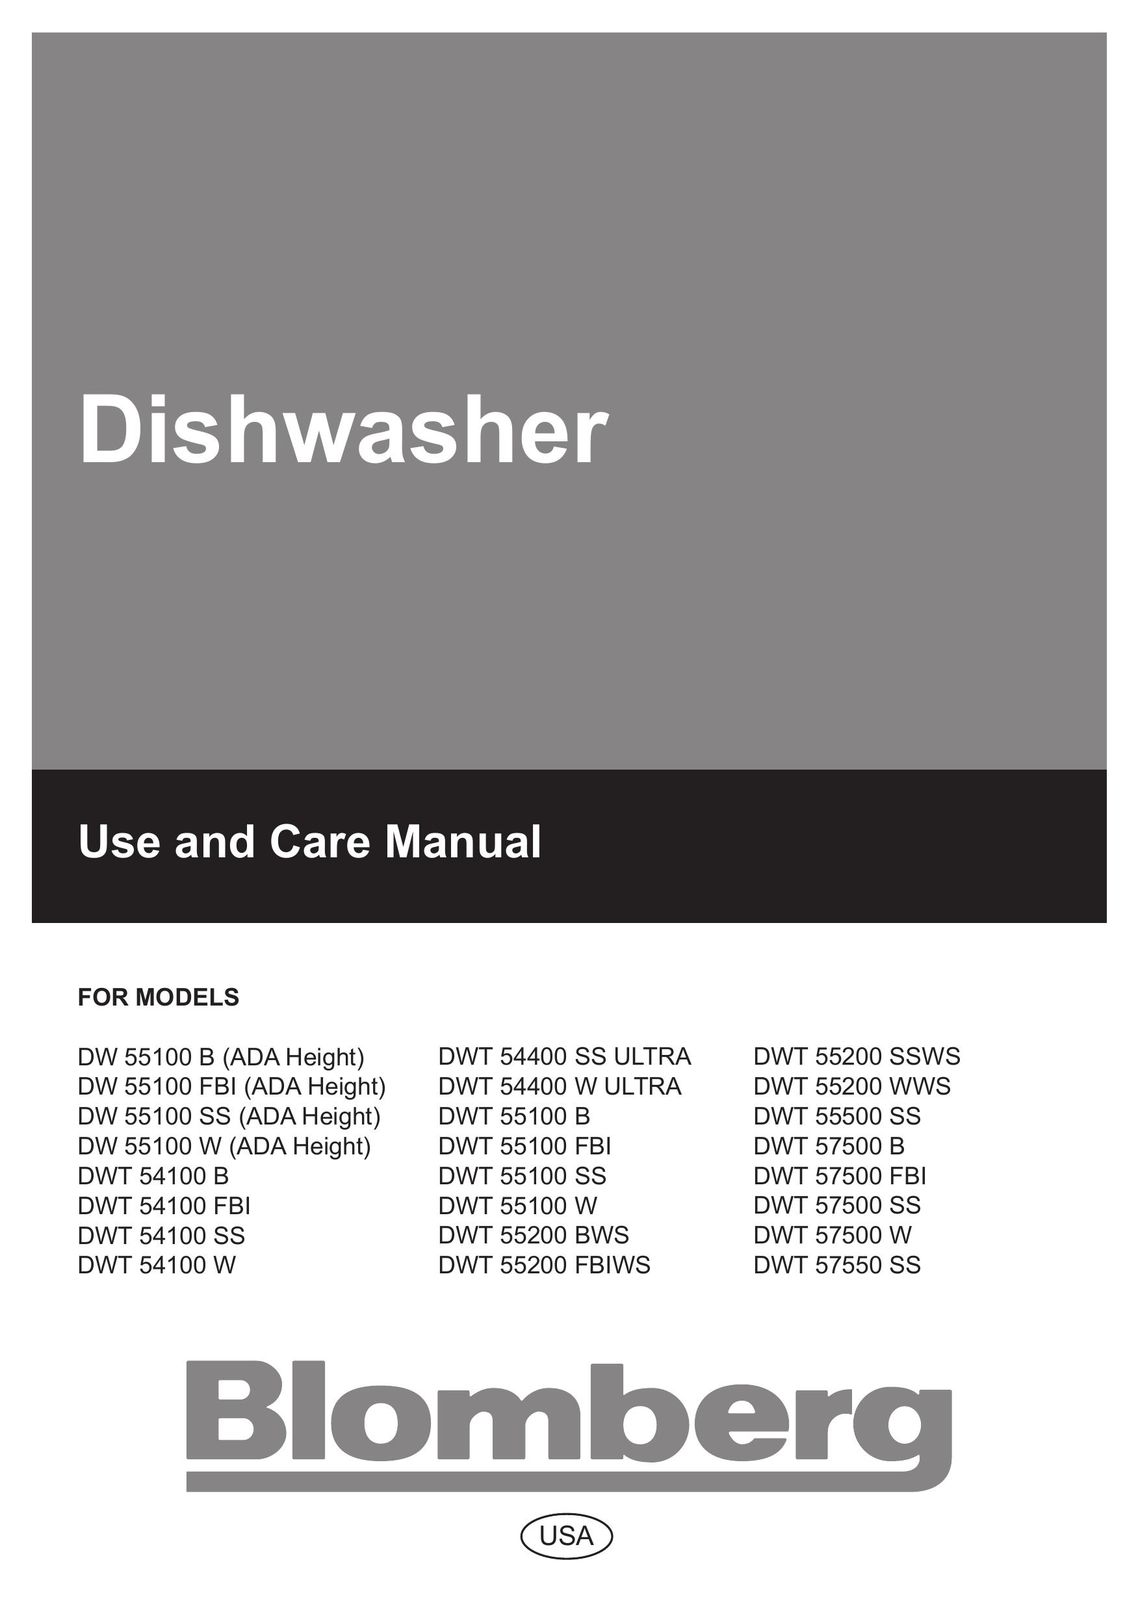 Blomberg DW 54100 SS Dishwasher User Manual